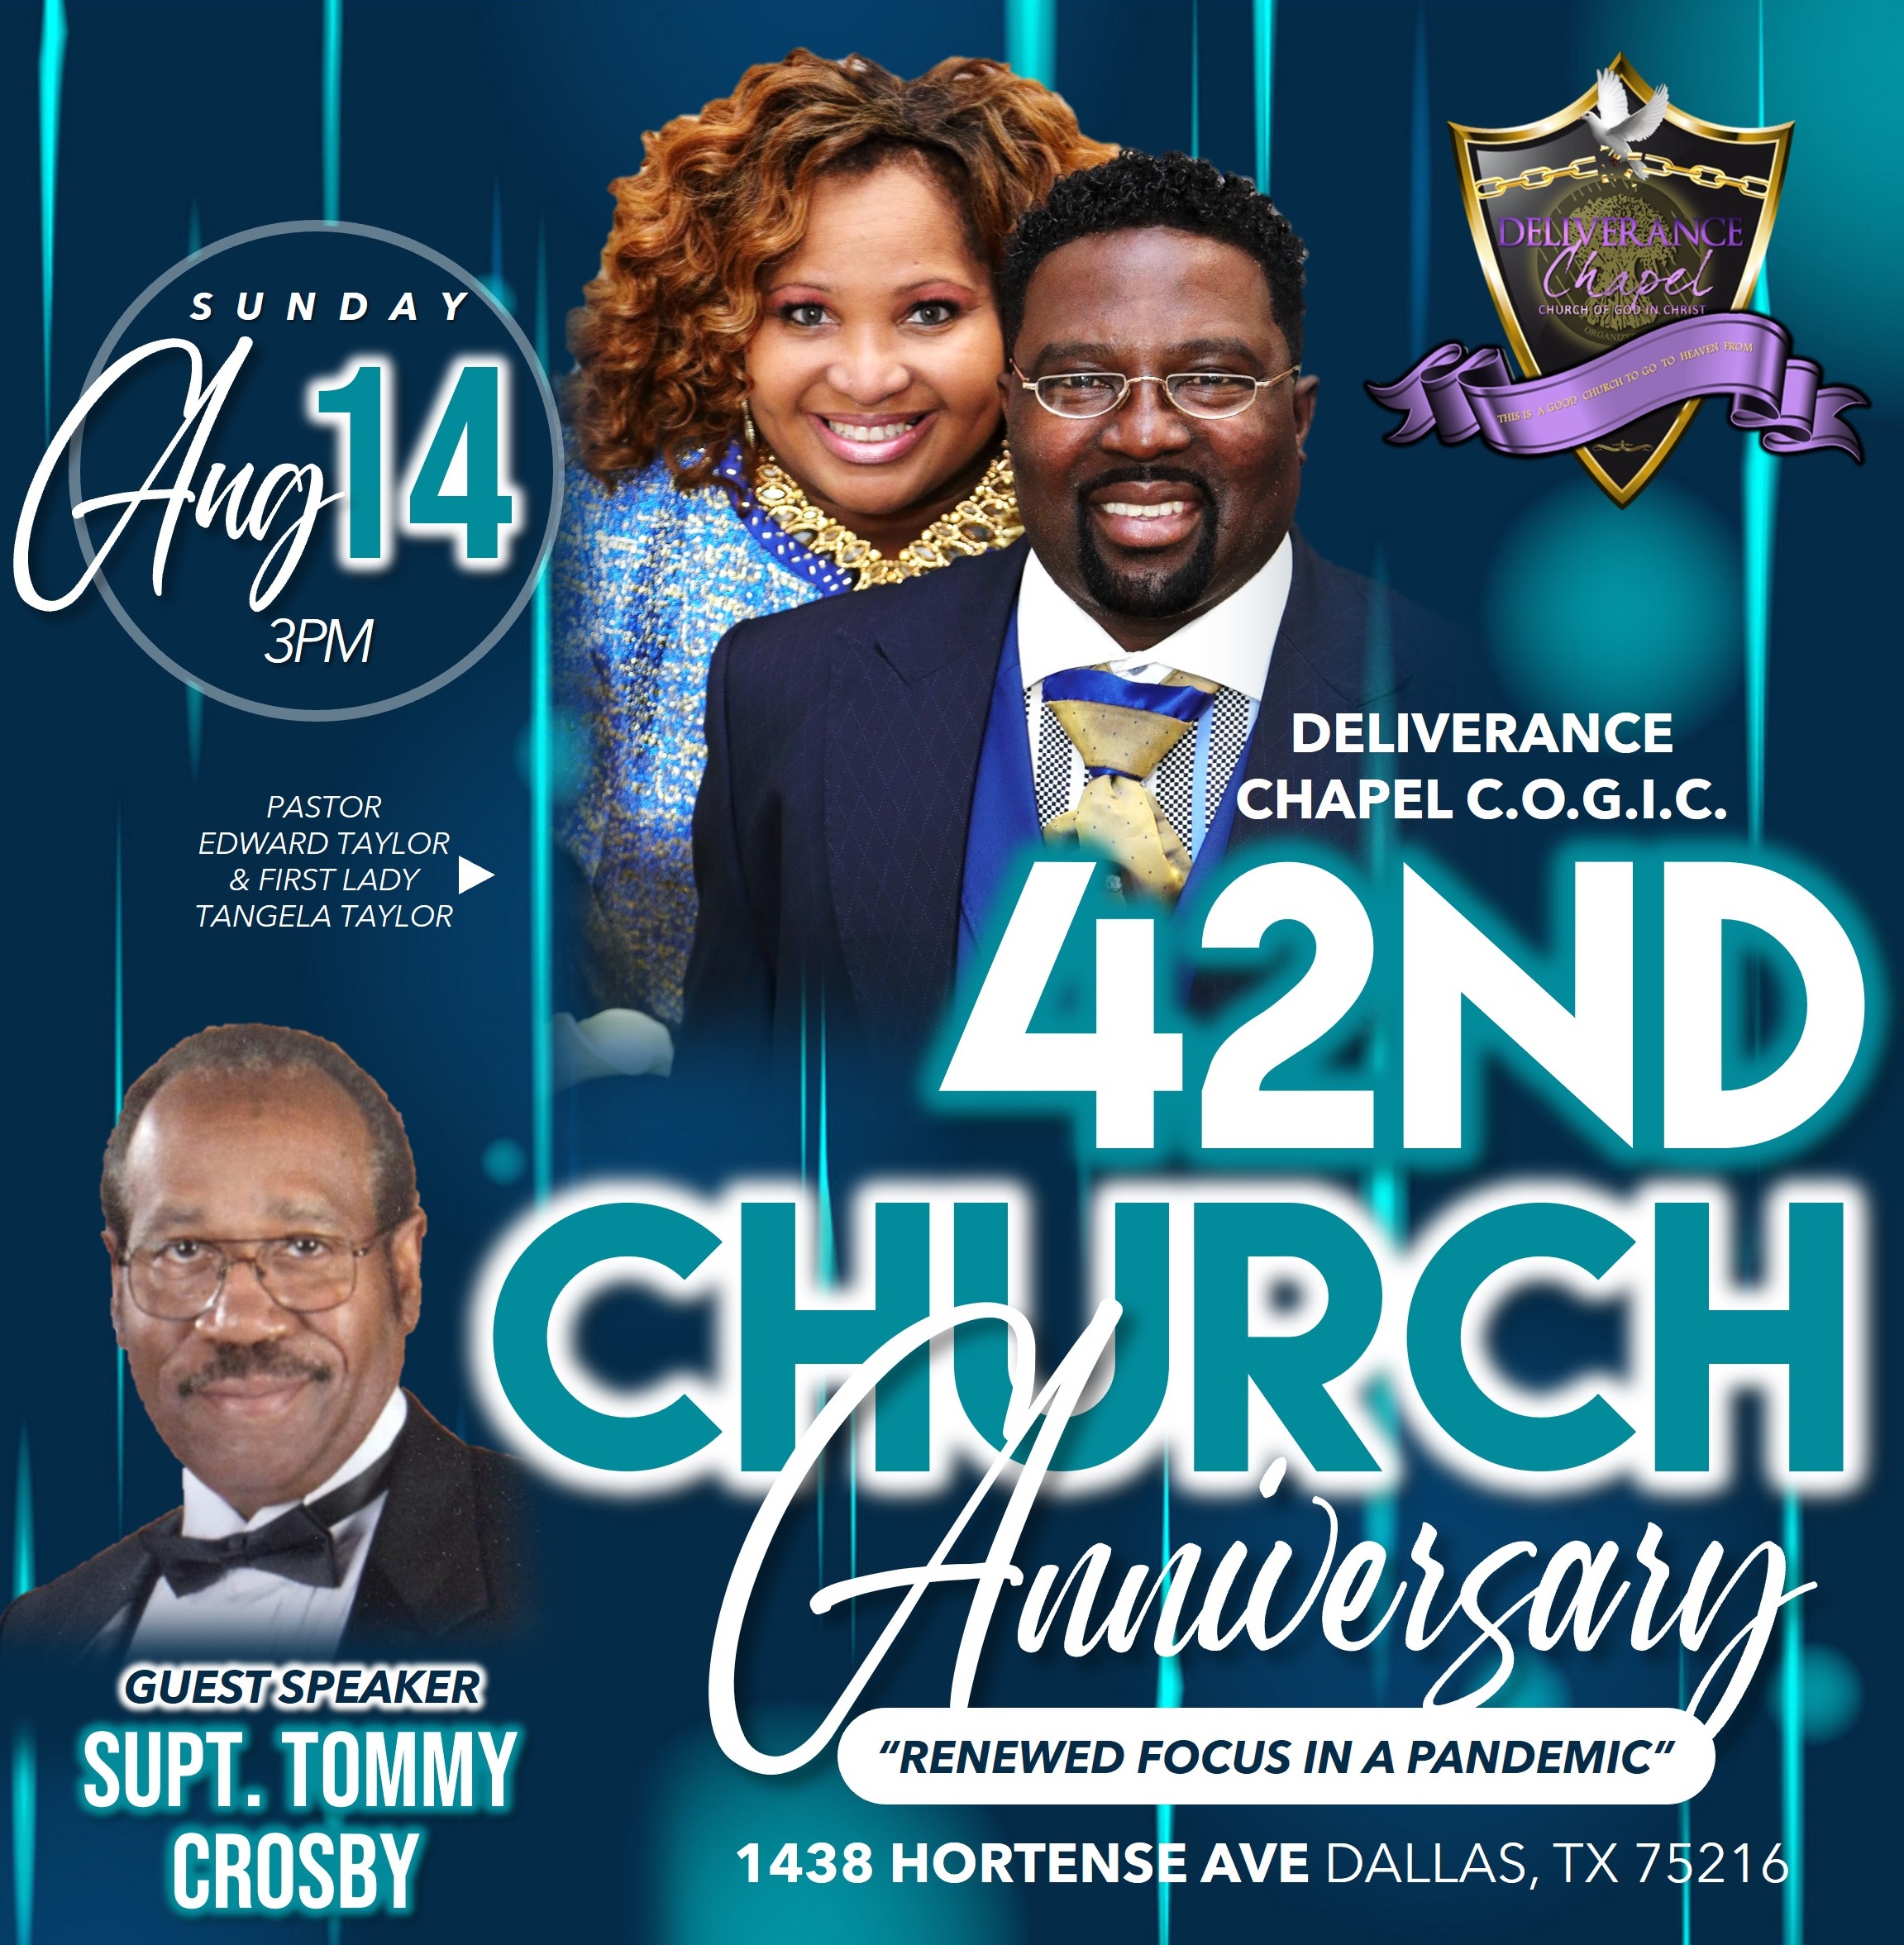 42nd Church Anniversary